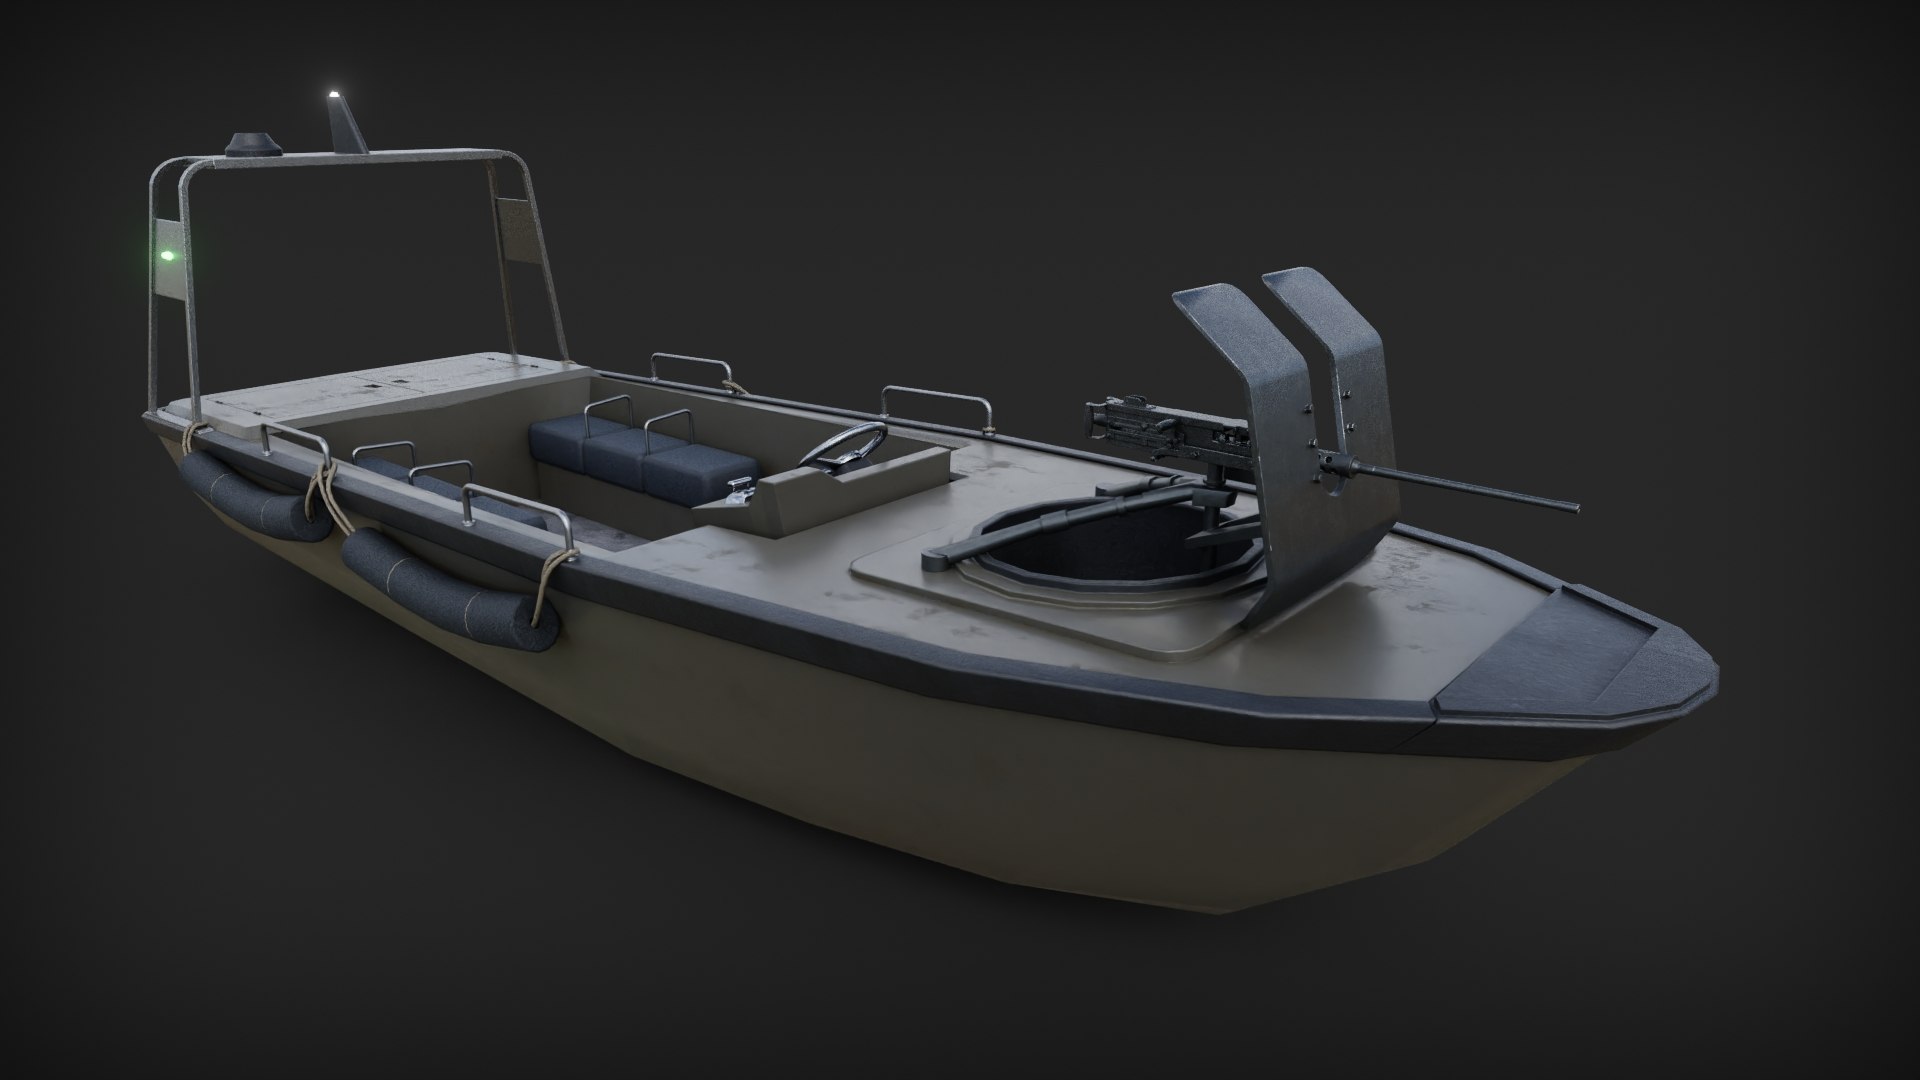 Marine Military Boat 3D Model - TurboSquid 2148359